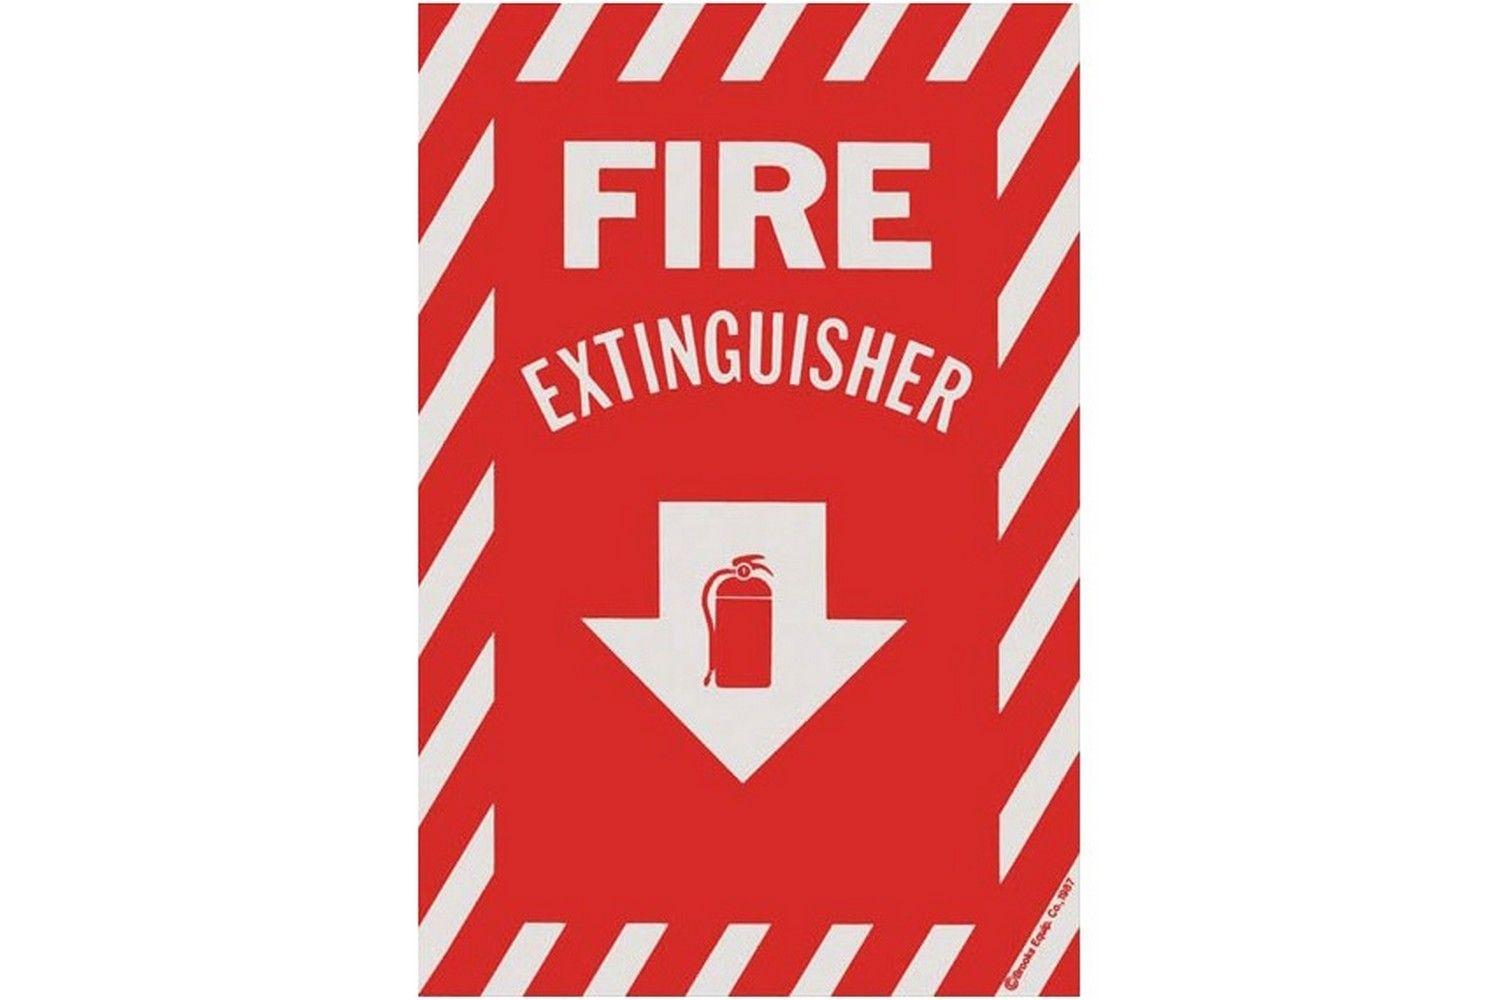 Fire Extinguisher Arrow Logo - FIRE EXTINGUISHER ARROW SIGN X 12